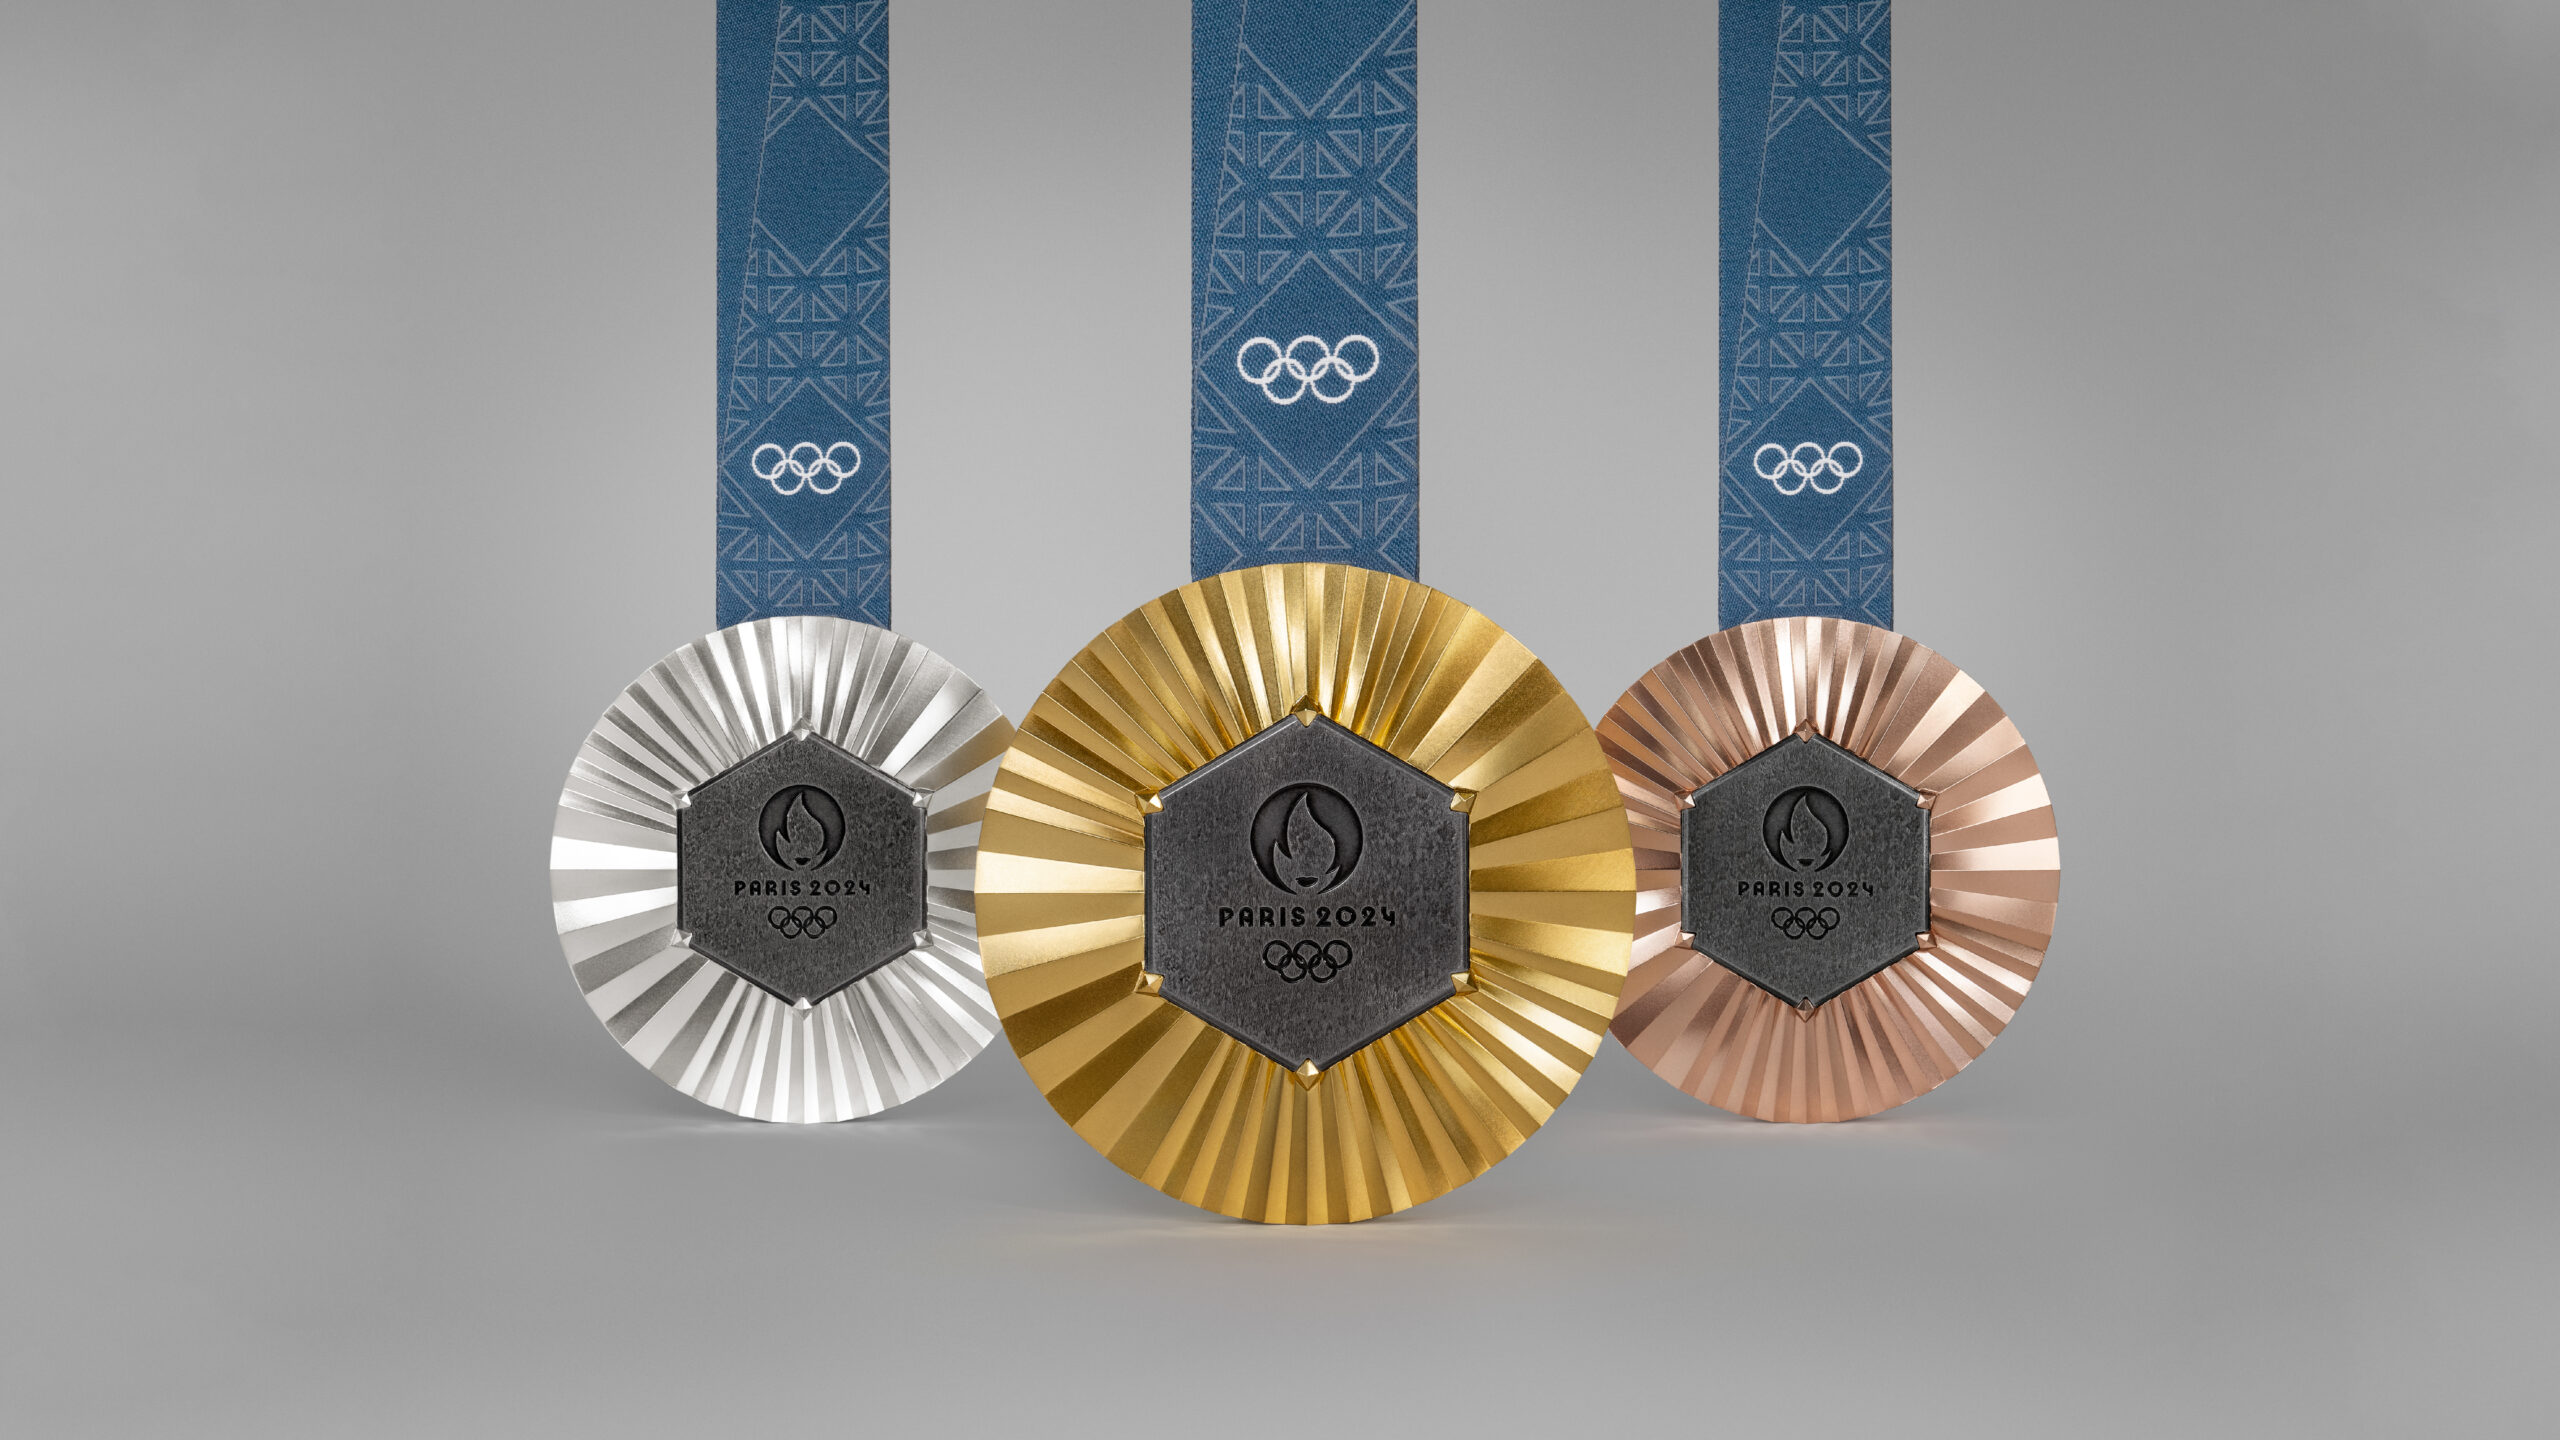 Paris 2024 dévoile les médailles des prochains Jeux Olympiques et Paralympiques